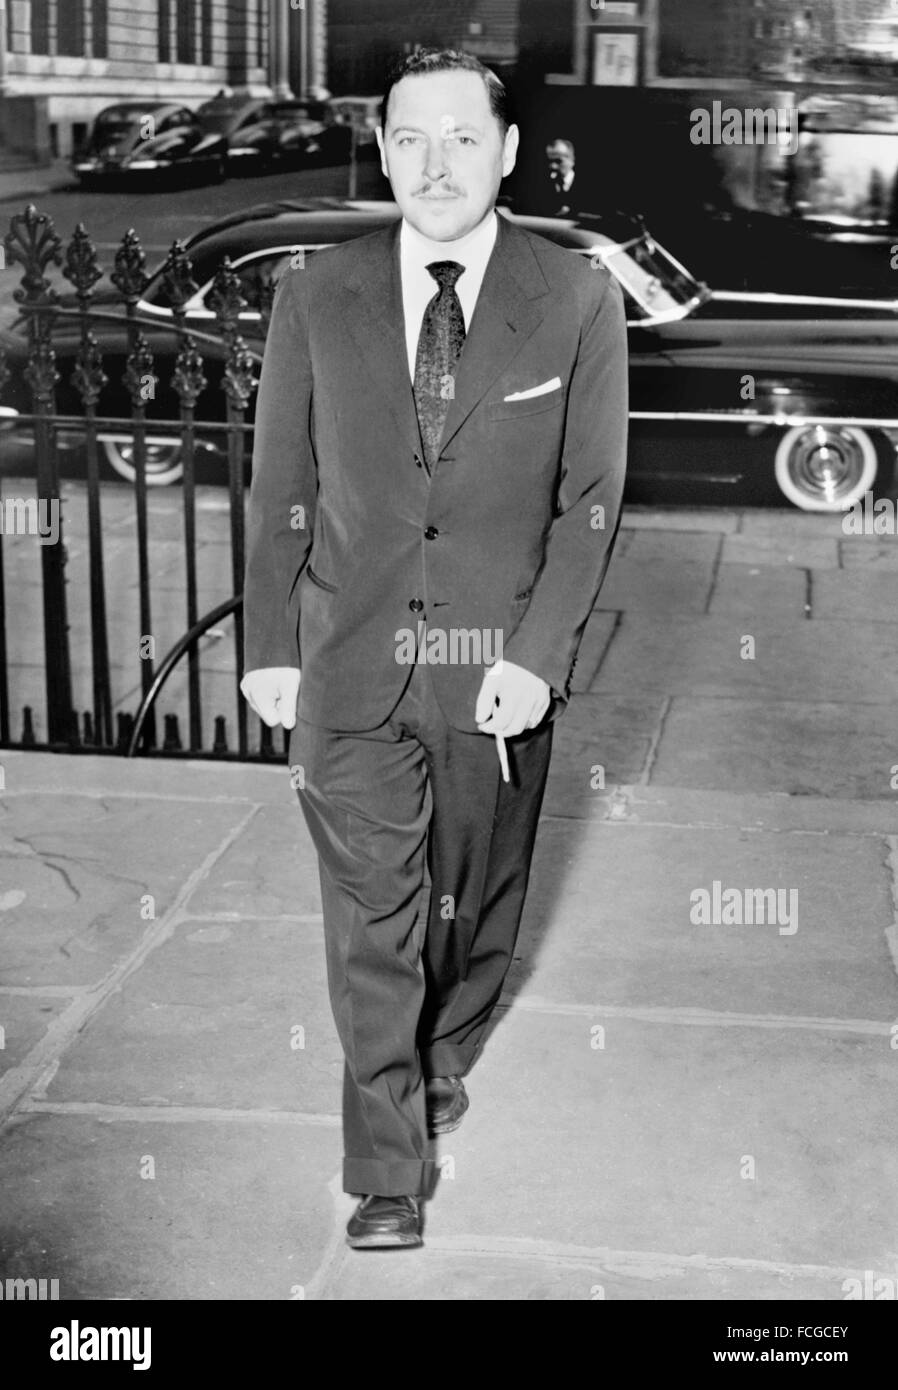 Tennessee Williams, le dramaturge américain, 1957 Banque D'Images